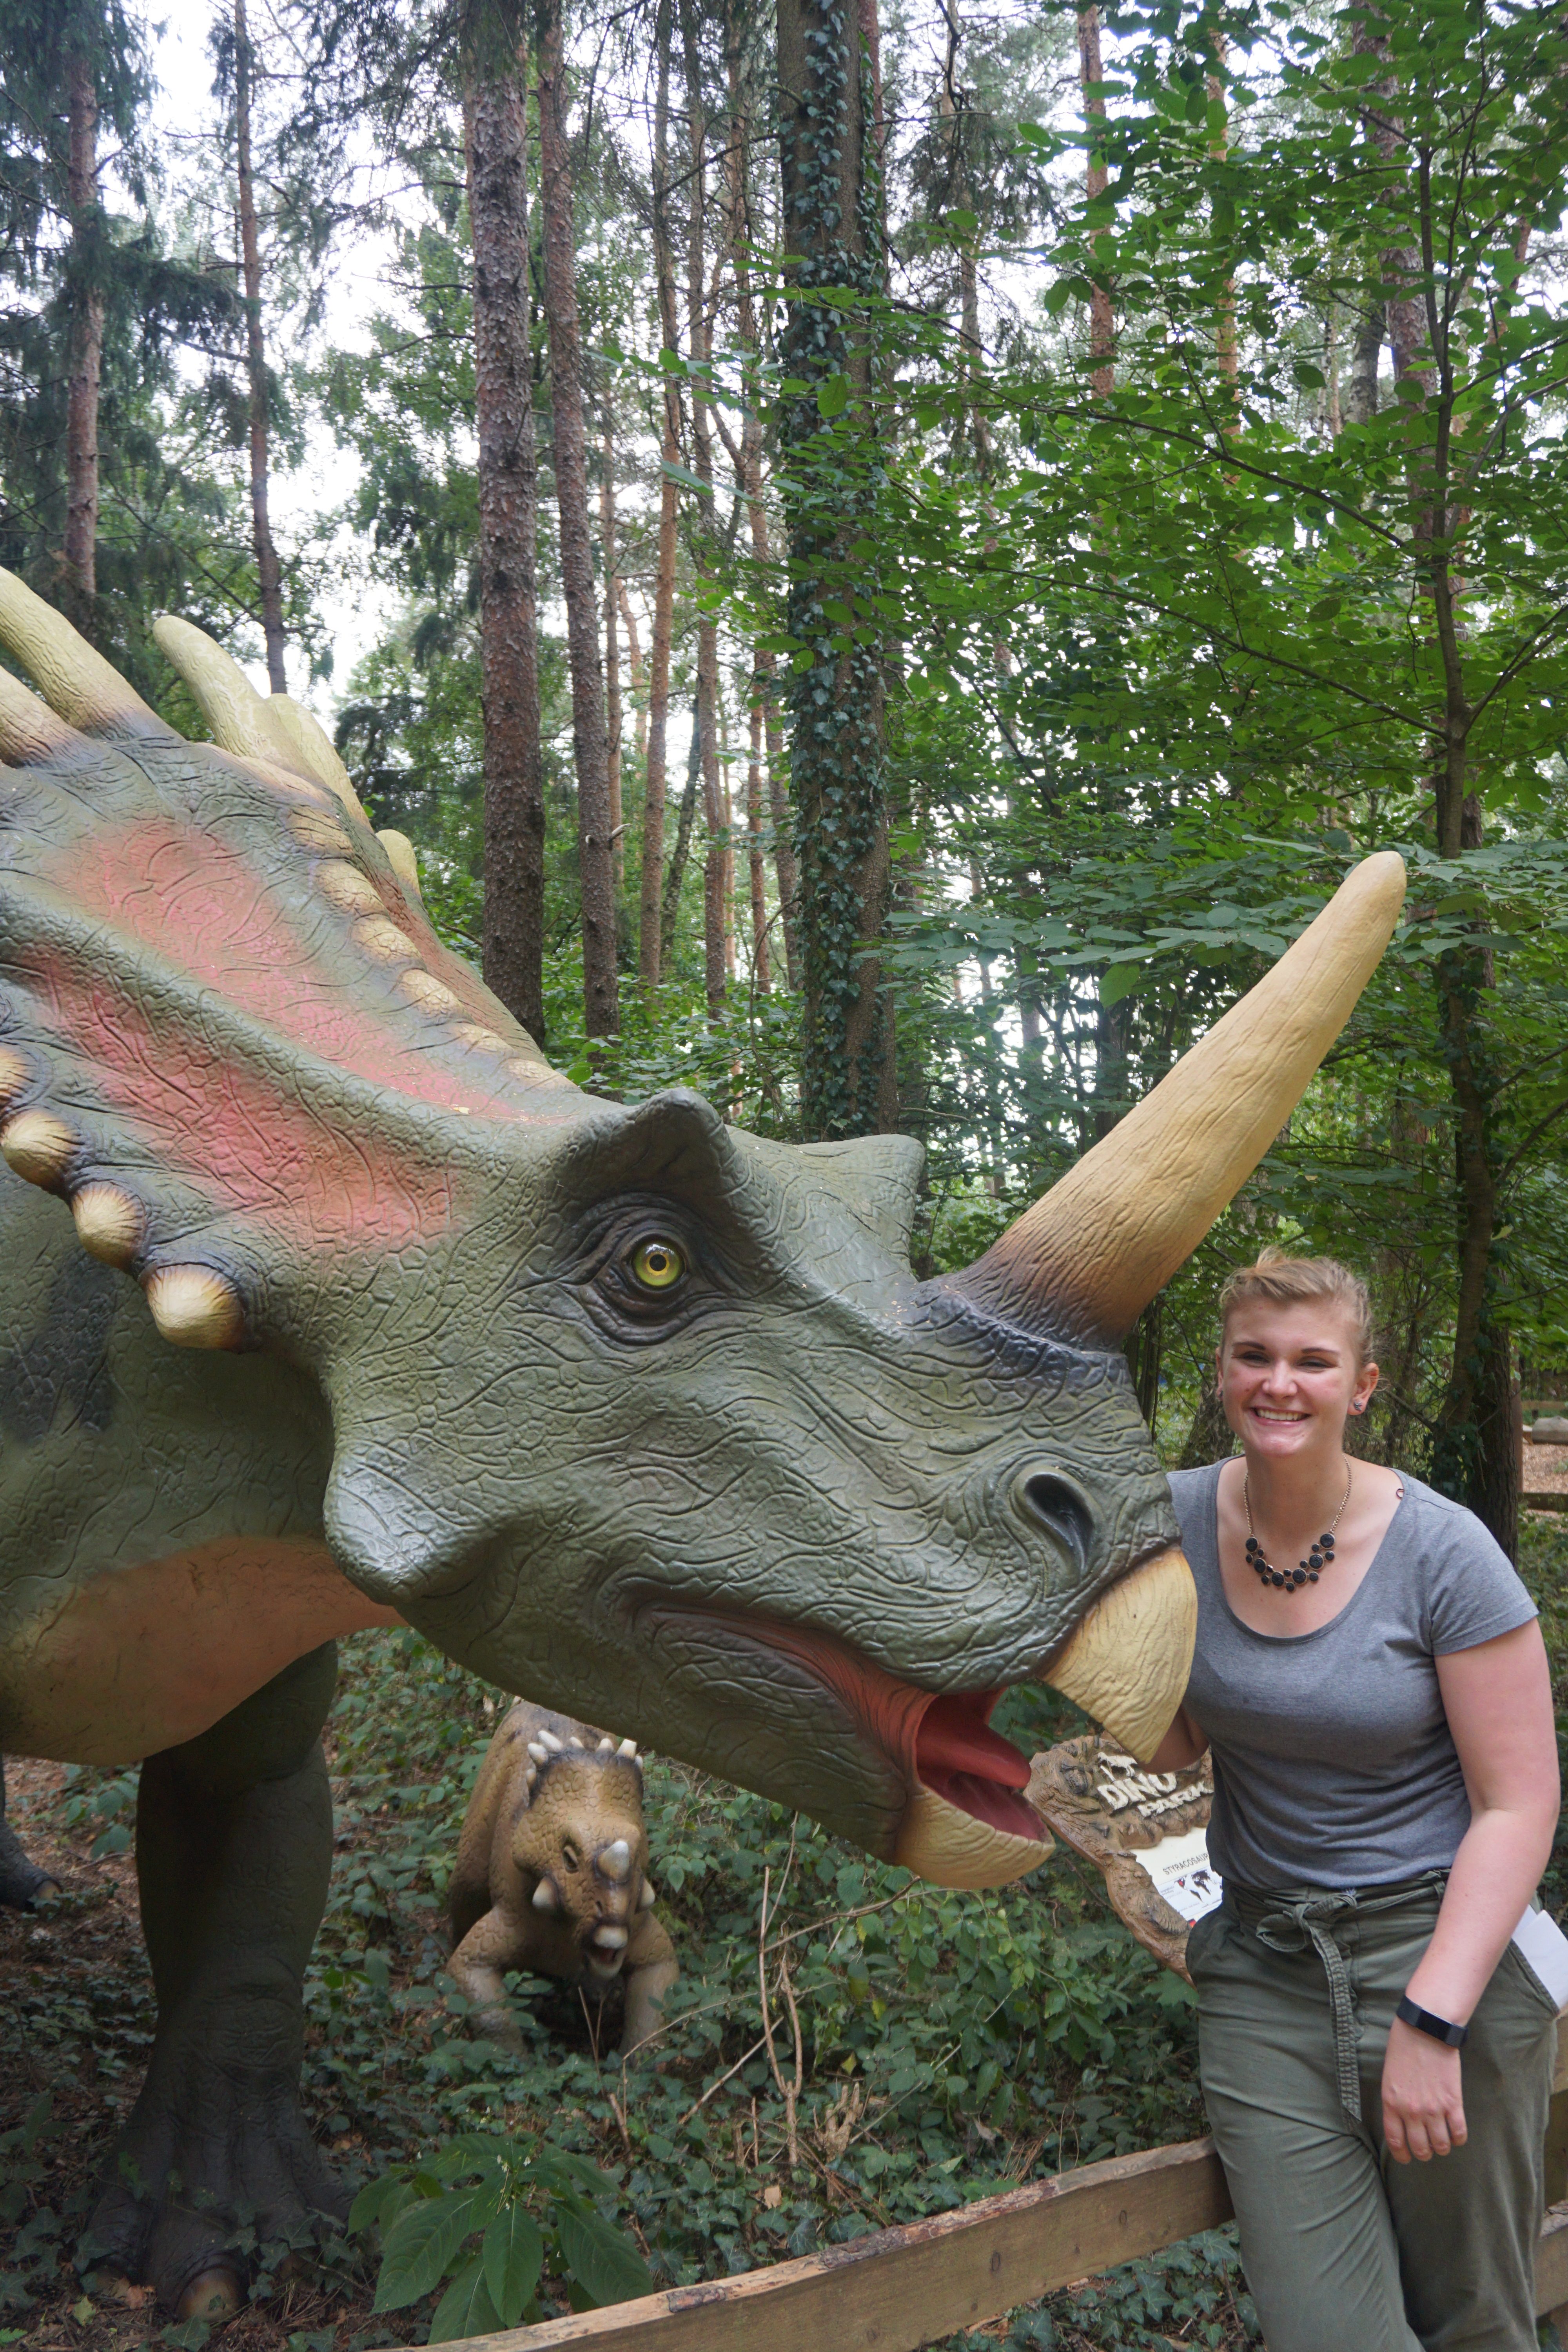 Dinopark Münchehagen